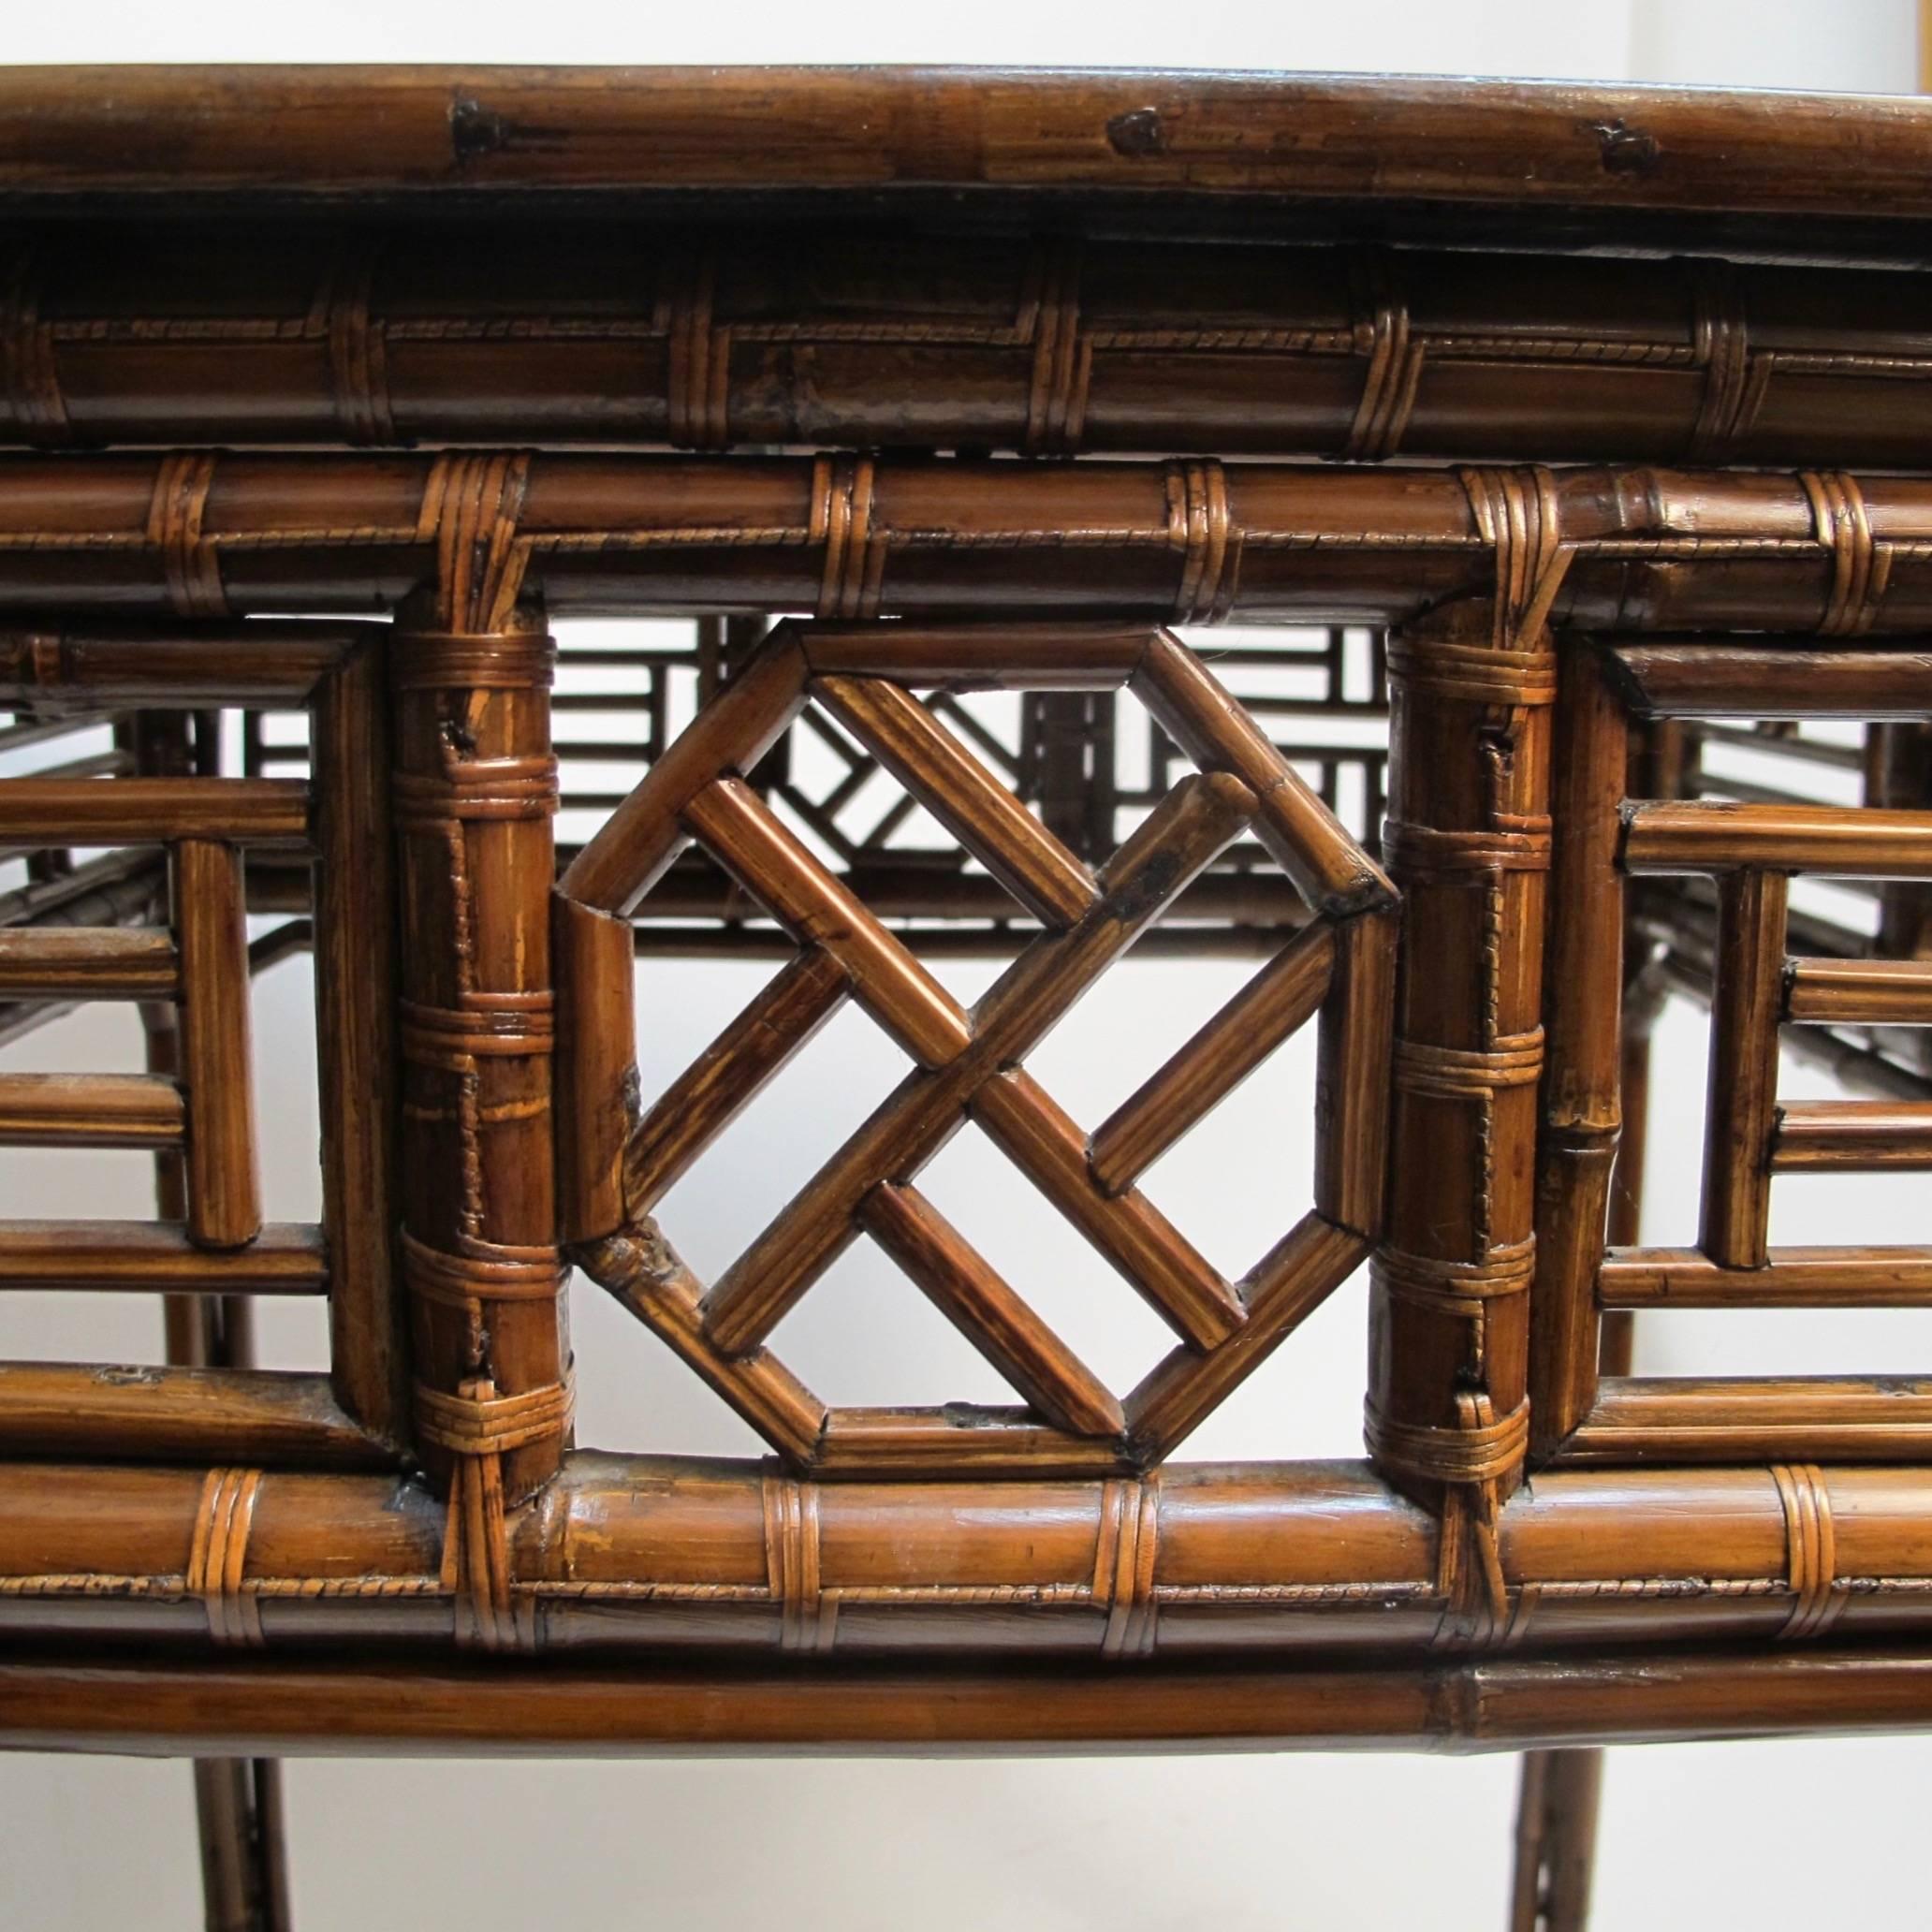 Table carrée avec plateau en bois laqué noir et motif complexe en bambou. Entièrement fabriqué à la main, sans clou ni matériel métallique. Chine, début ou milieu du 20e siècle.